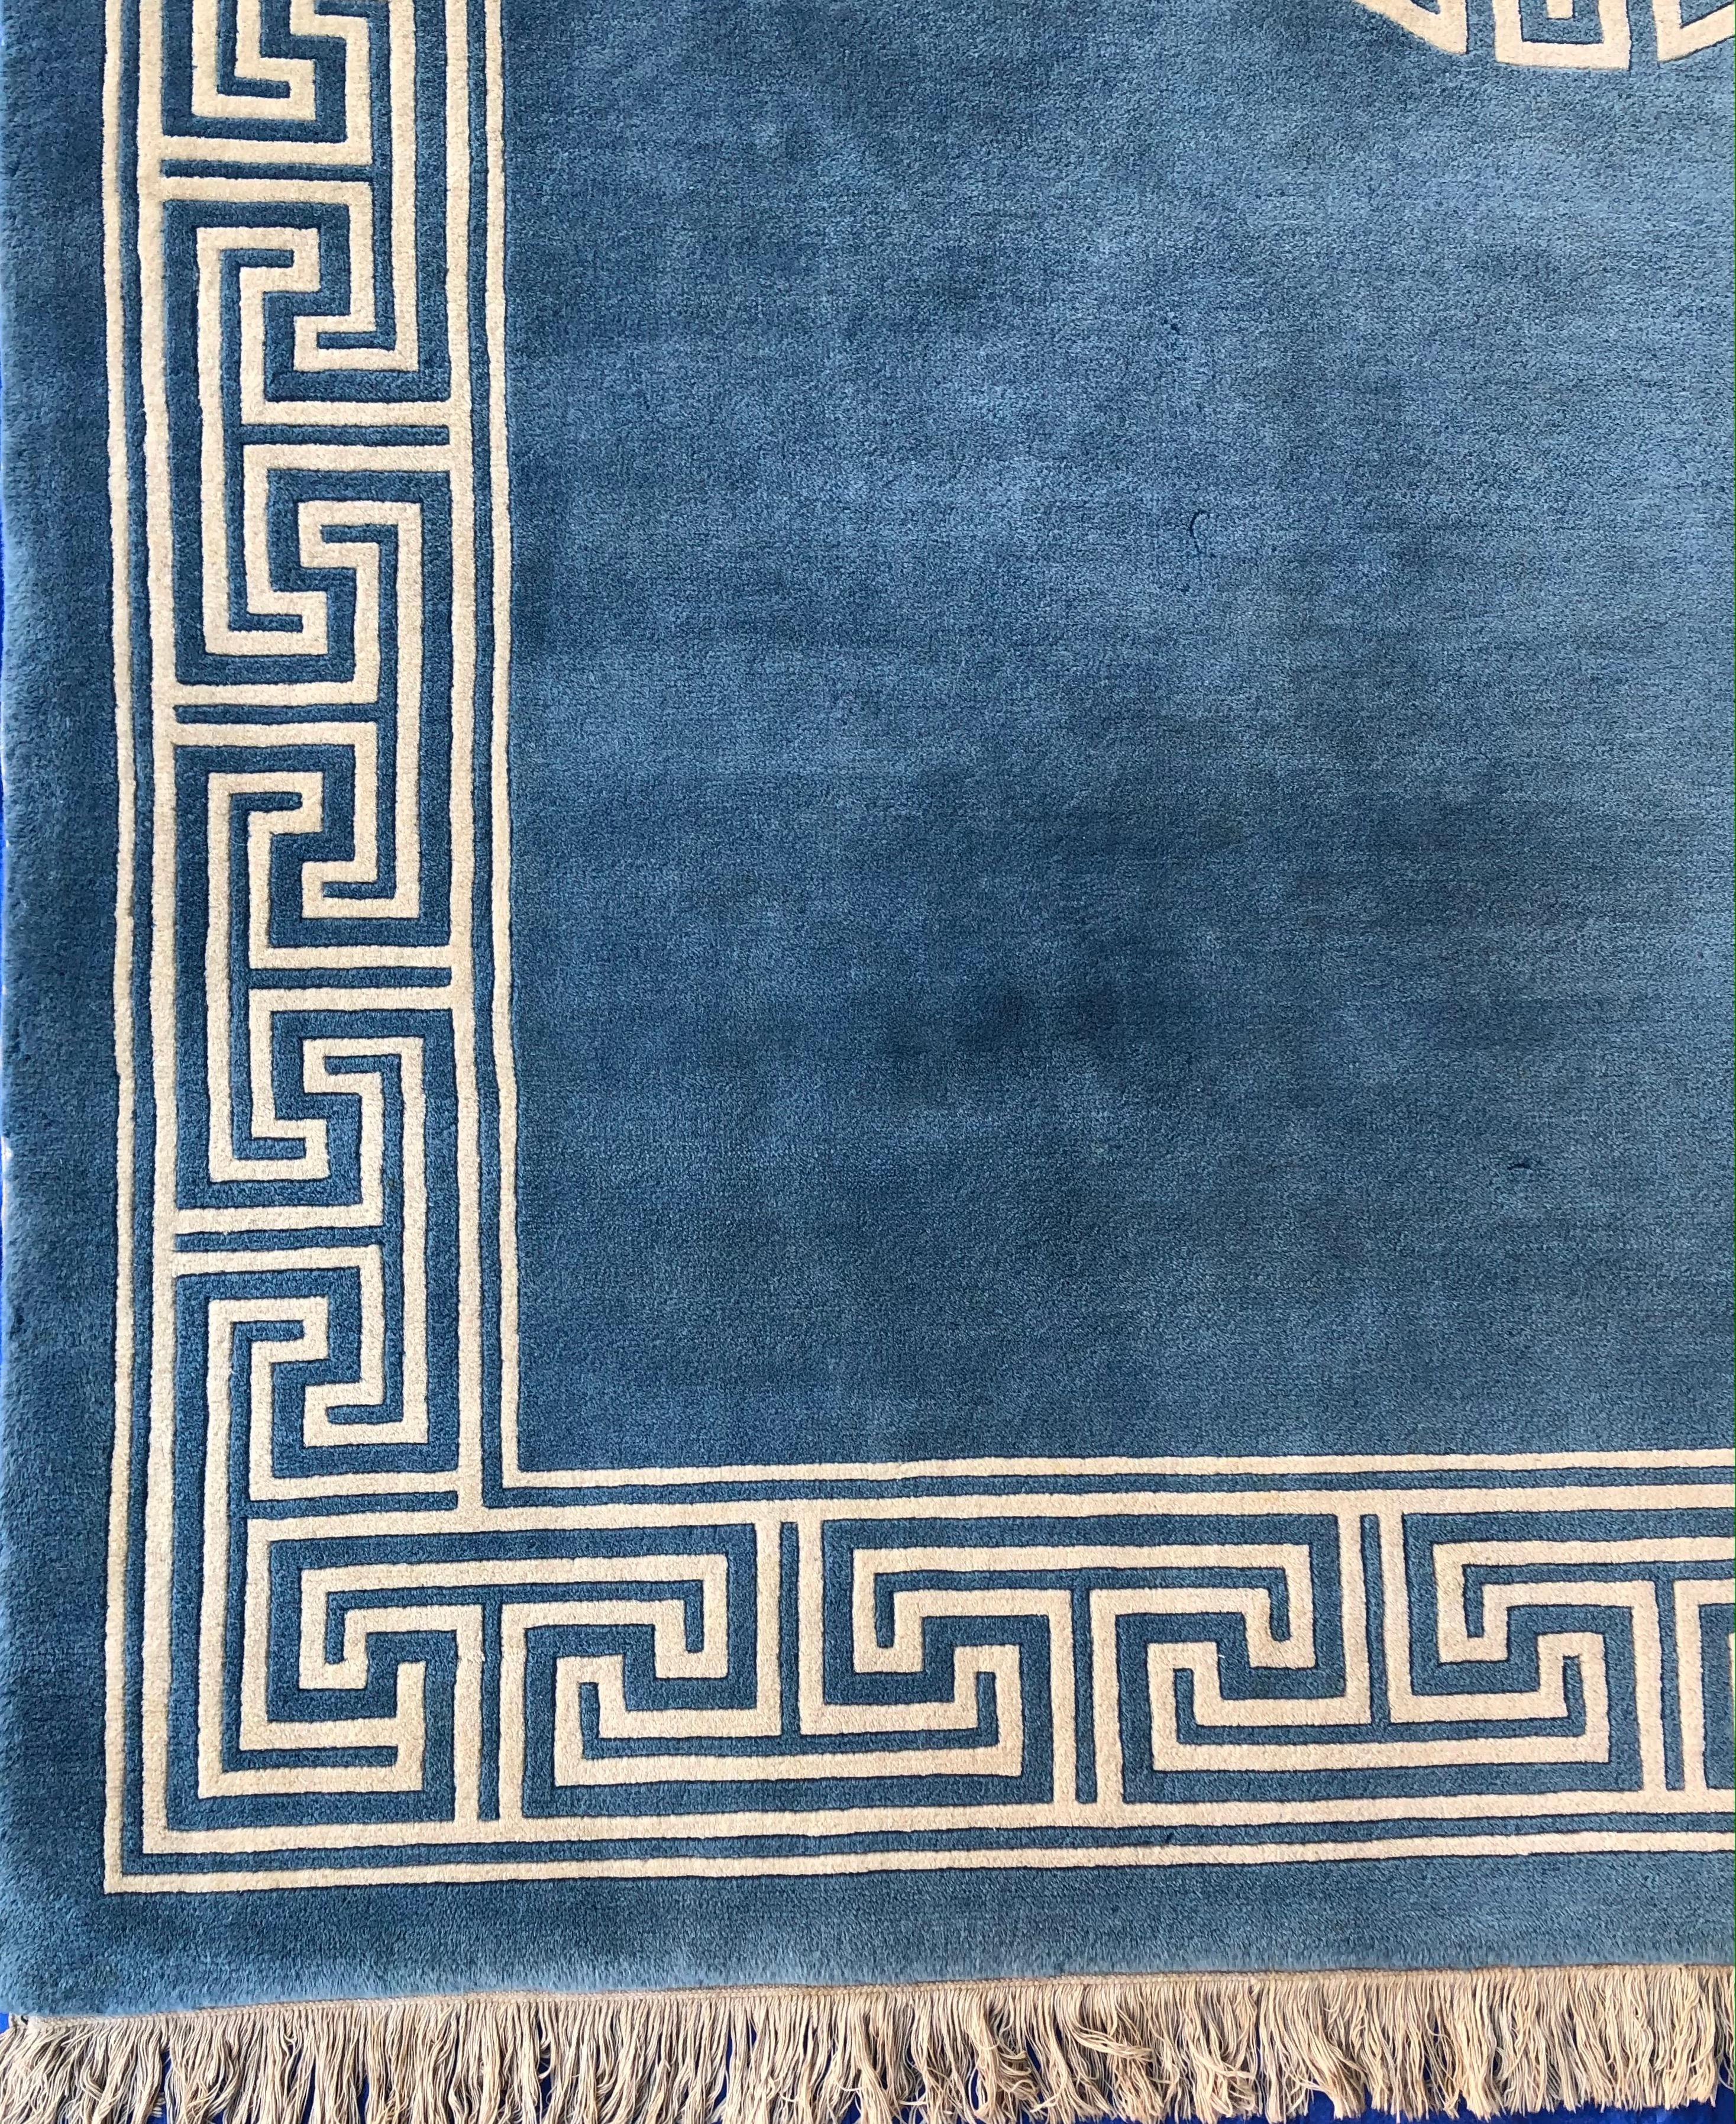 Eine feine antike Ningxia blau und beige handgefertigten Seidenteppich.

Dieser moderne Seidenteppich strahlt eine wahrhaft fröhliche Aura aus. Sein Design basiert auf geometrischen Figuren, die regelmäßig auf dem gesamten Feld angeordnet sind,